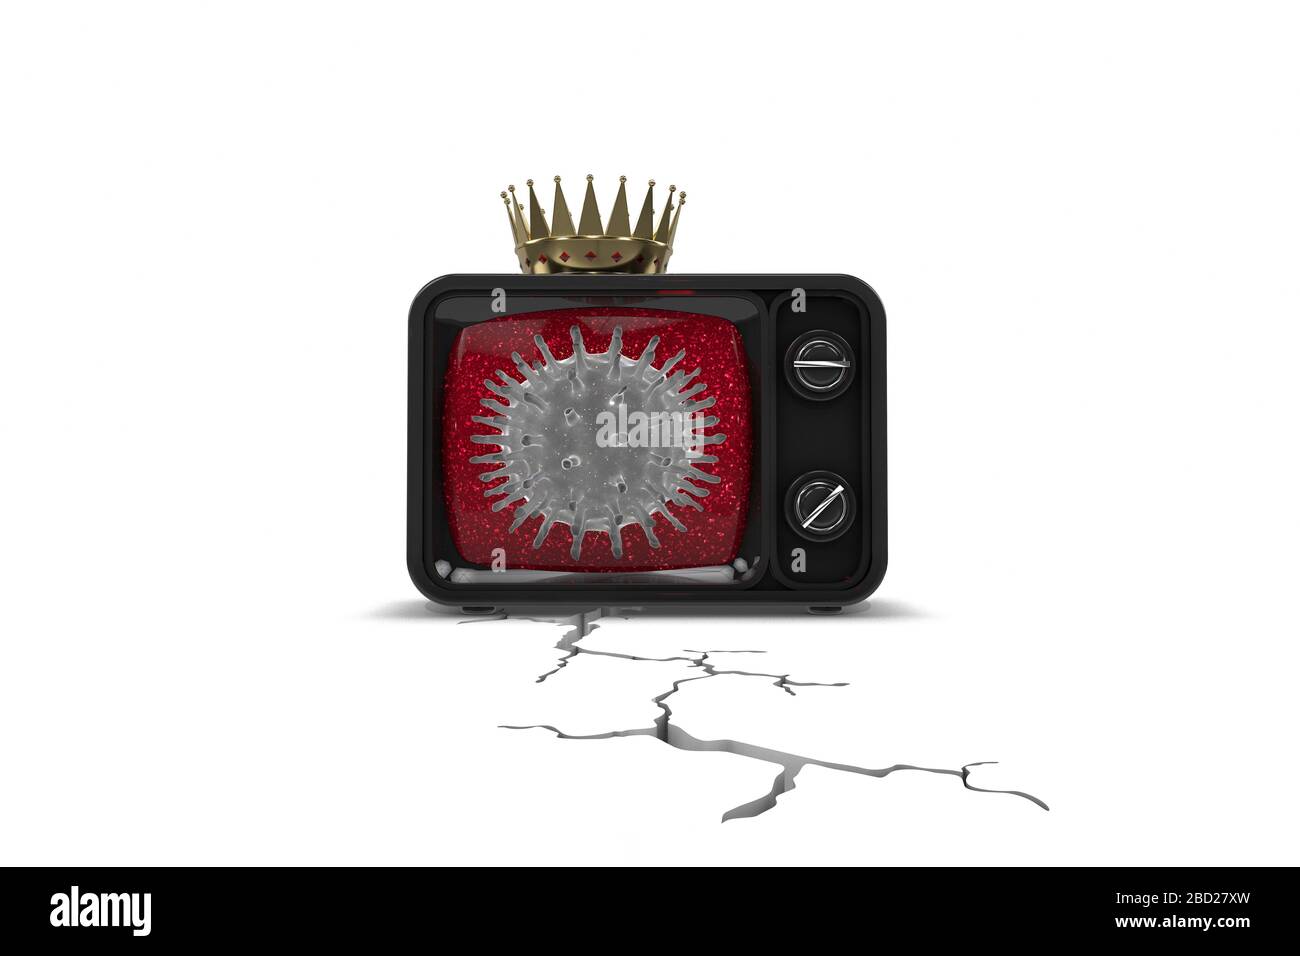 Ilustración 3d: TV vintage negra con célula de virus gris en la pantalla roja con corona dorada. Grietas y grietas debajo de ella. Miedo y pánico. Foto de stock